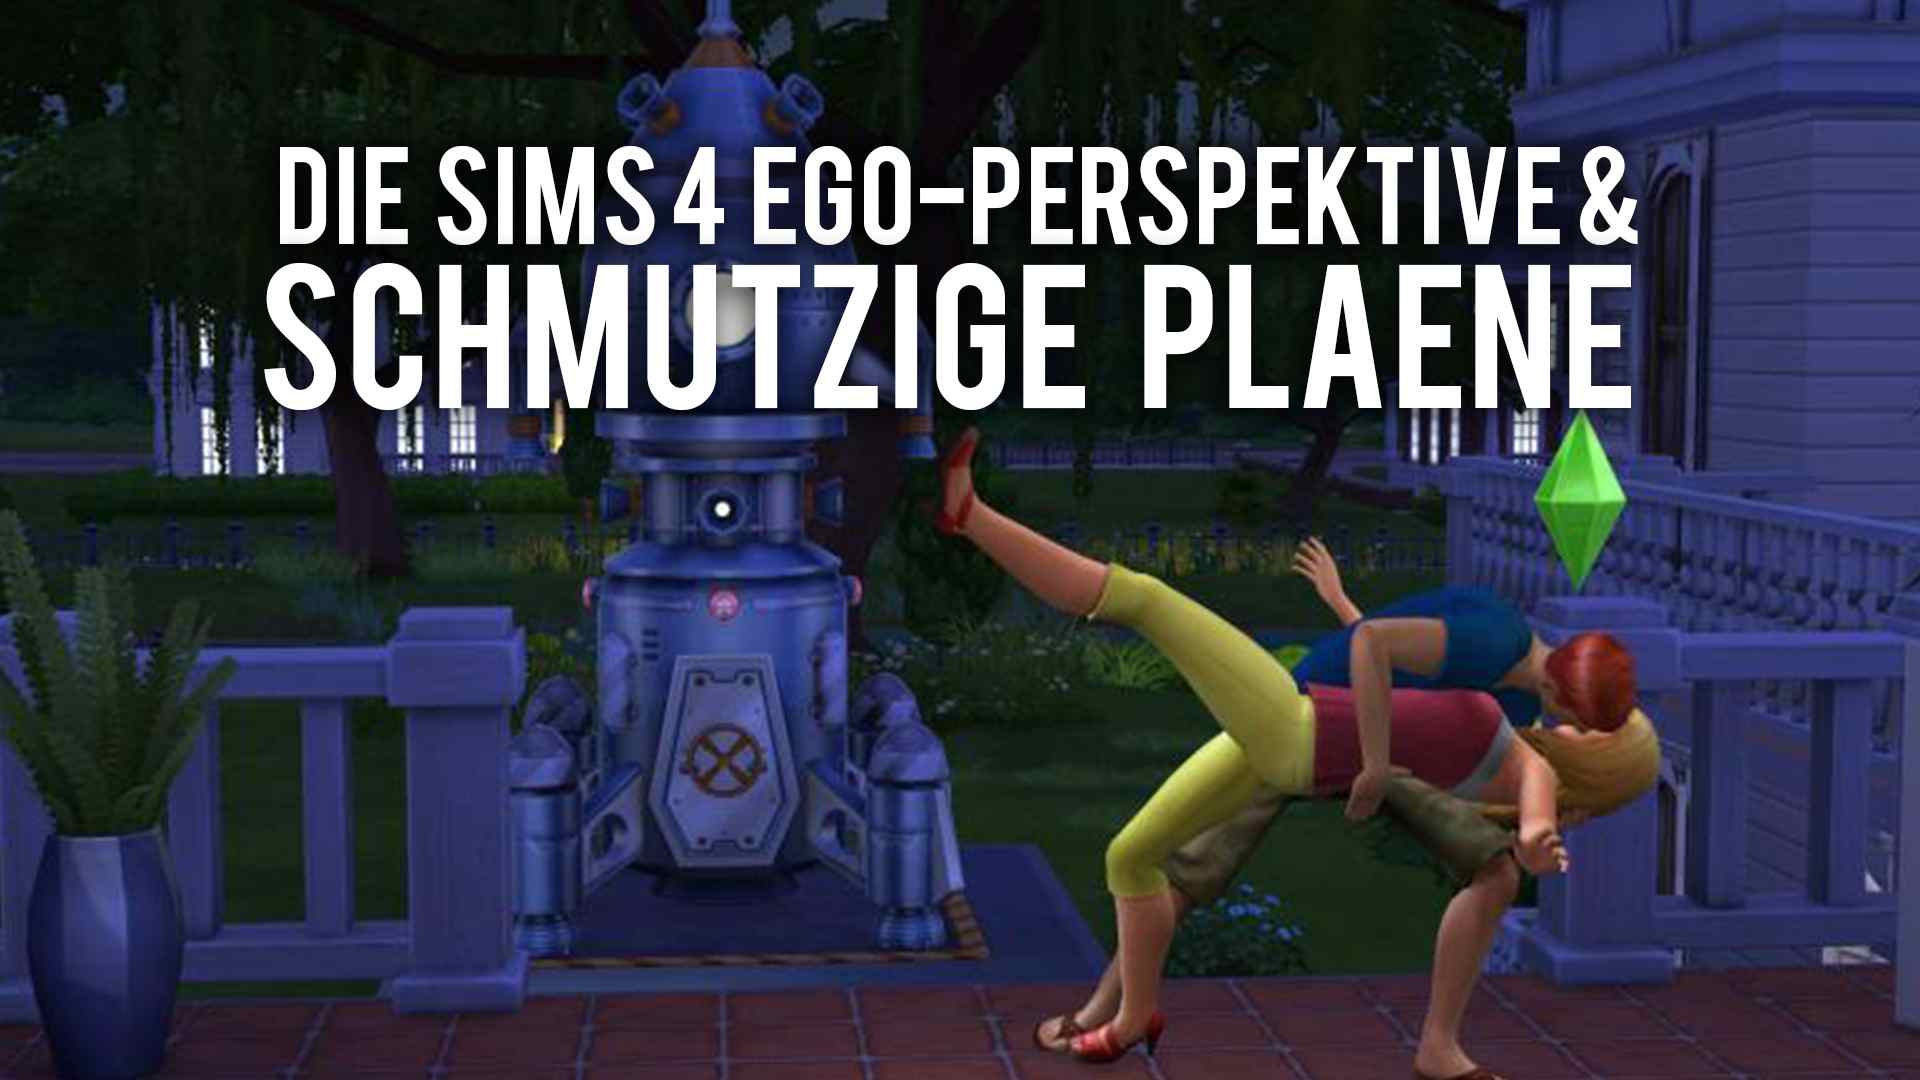 Die Sims 4 mit Ego-Perspektive - Spieler haben schmutzige PlÃ¤ne